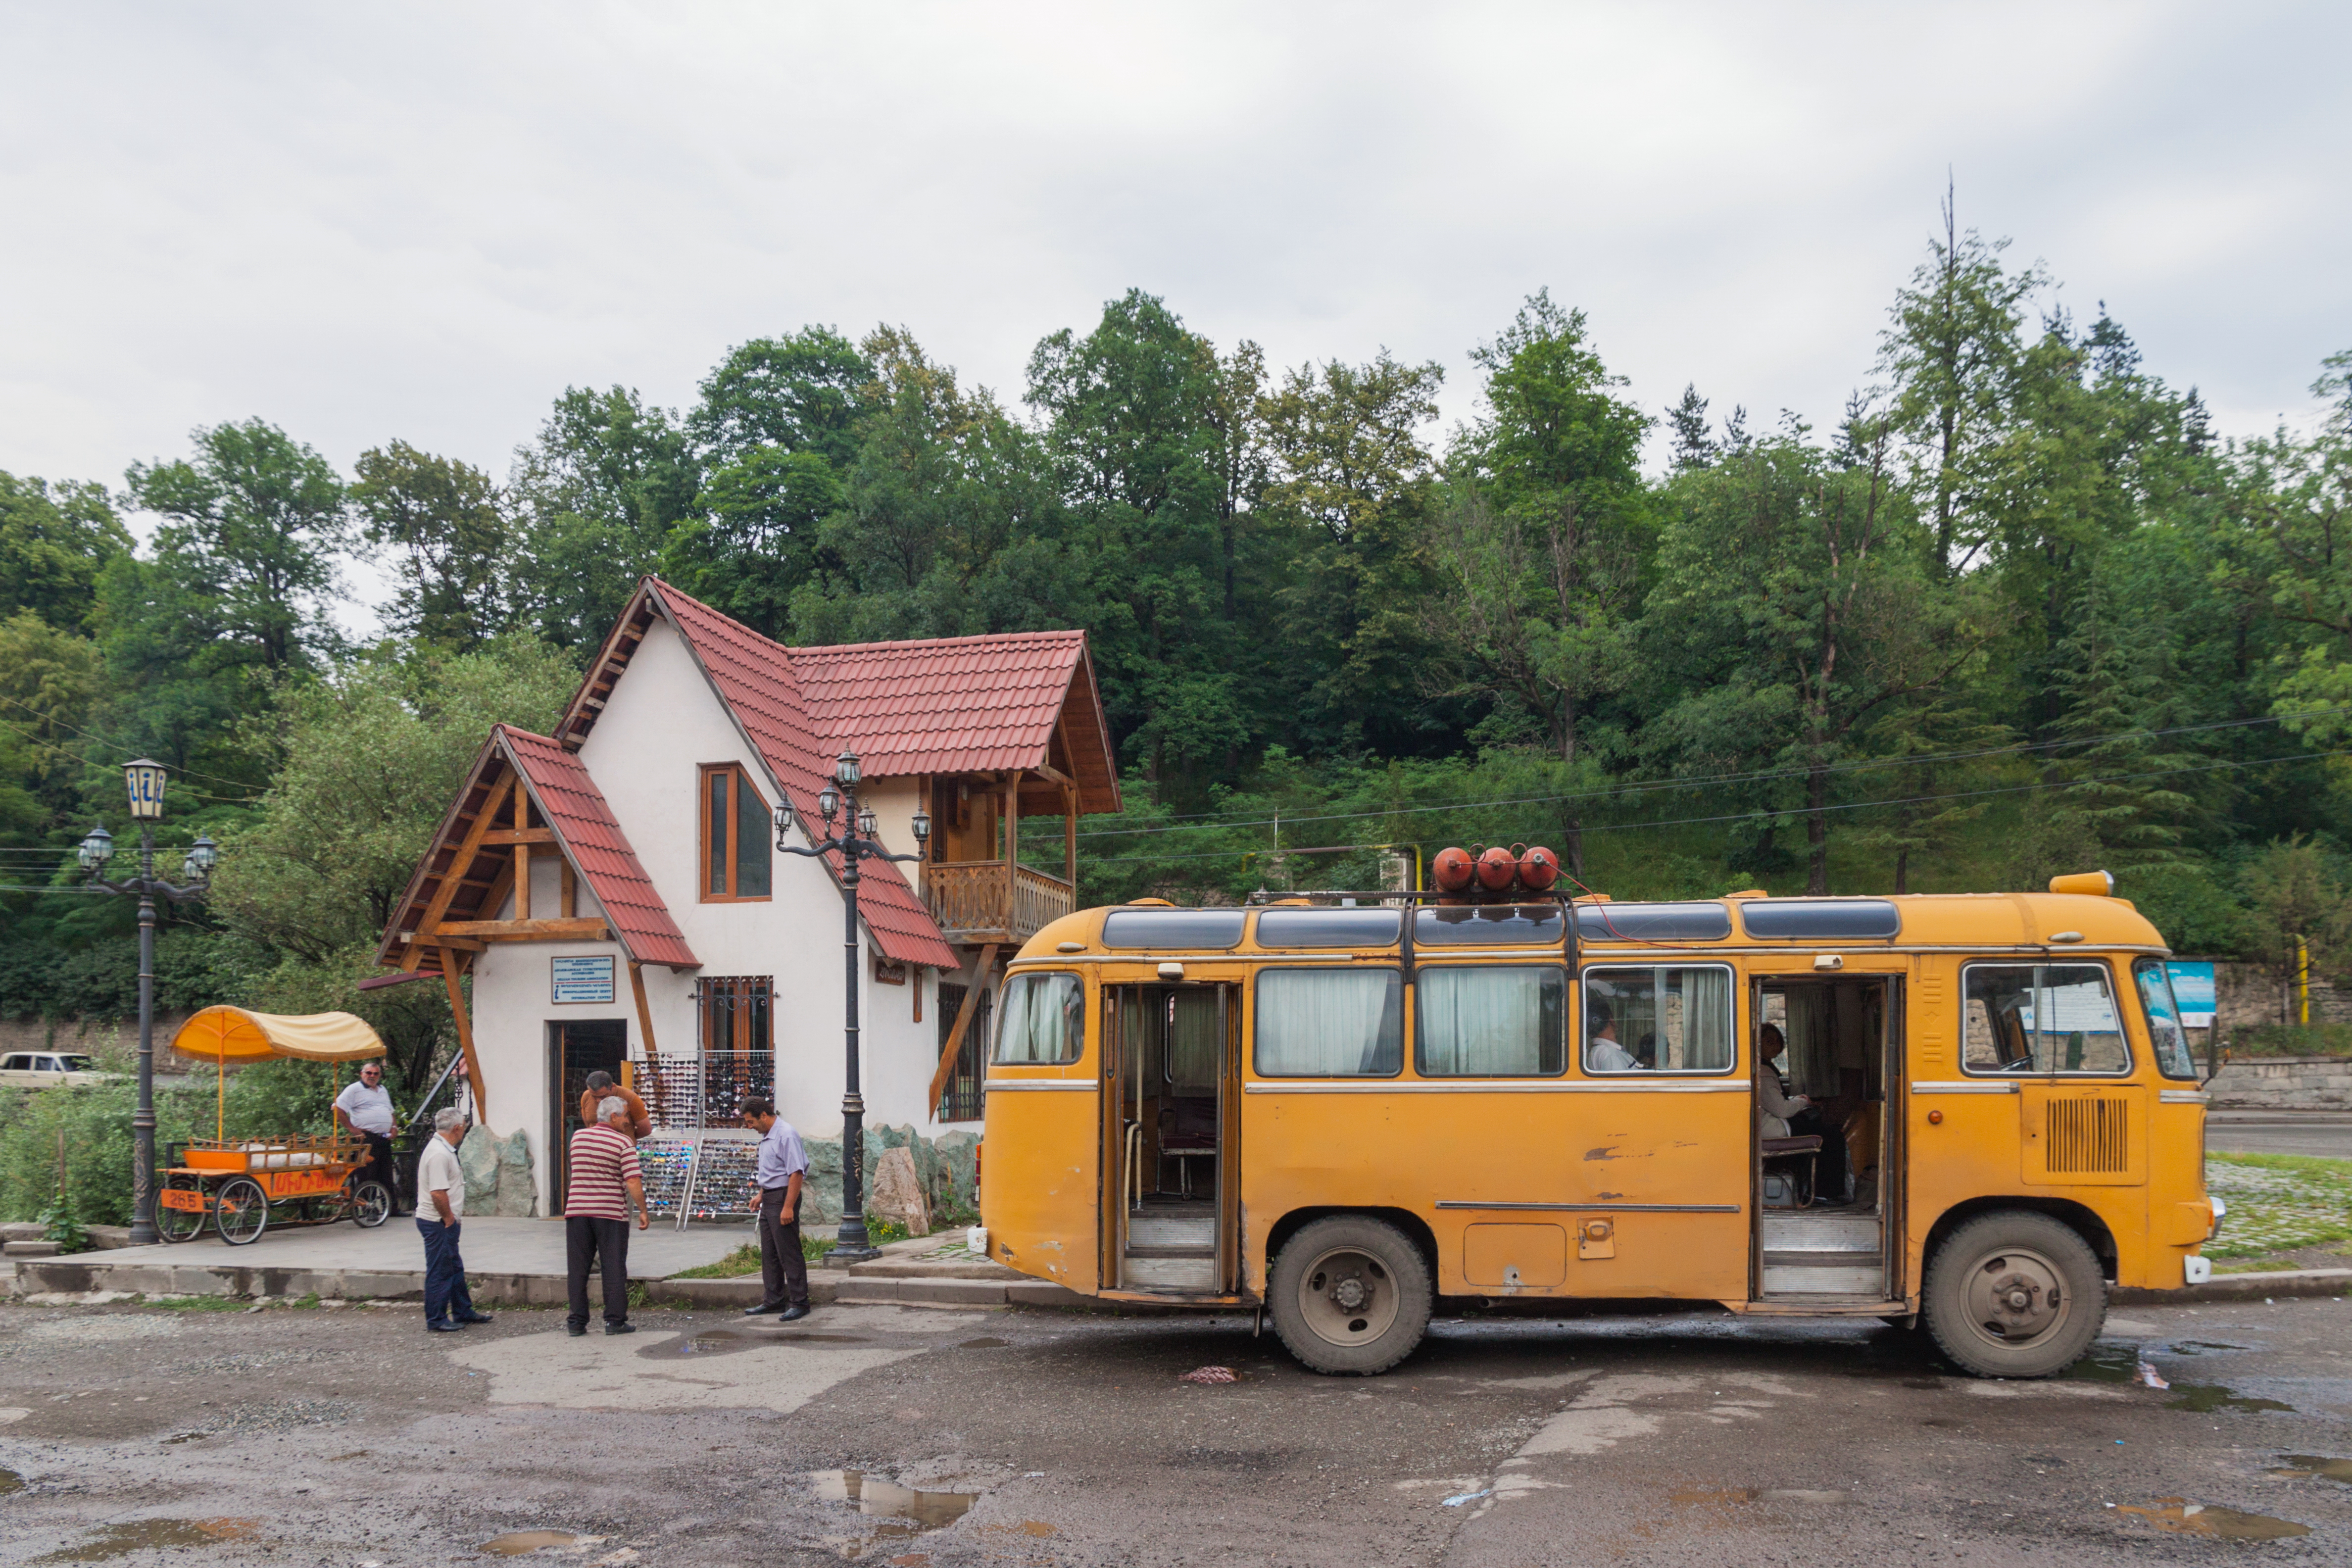 2014 Prowincja Tawusz, Dilidżan, Minibus na przystanku przy drodze M-4